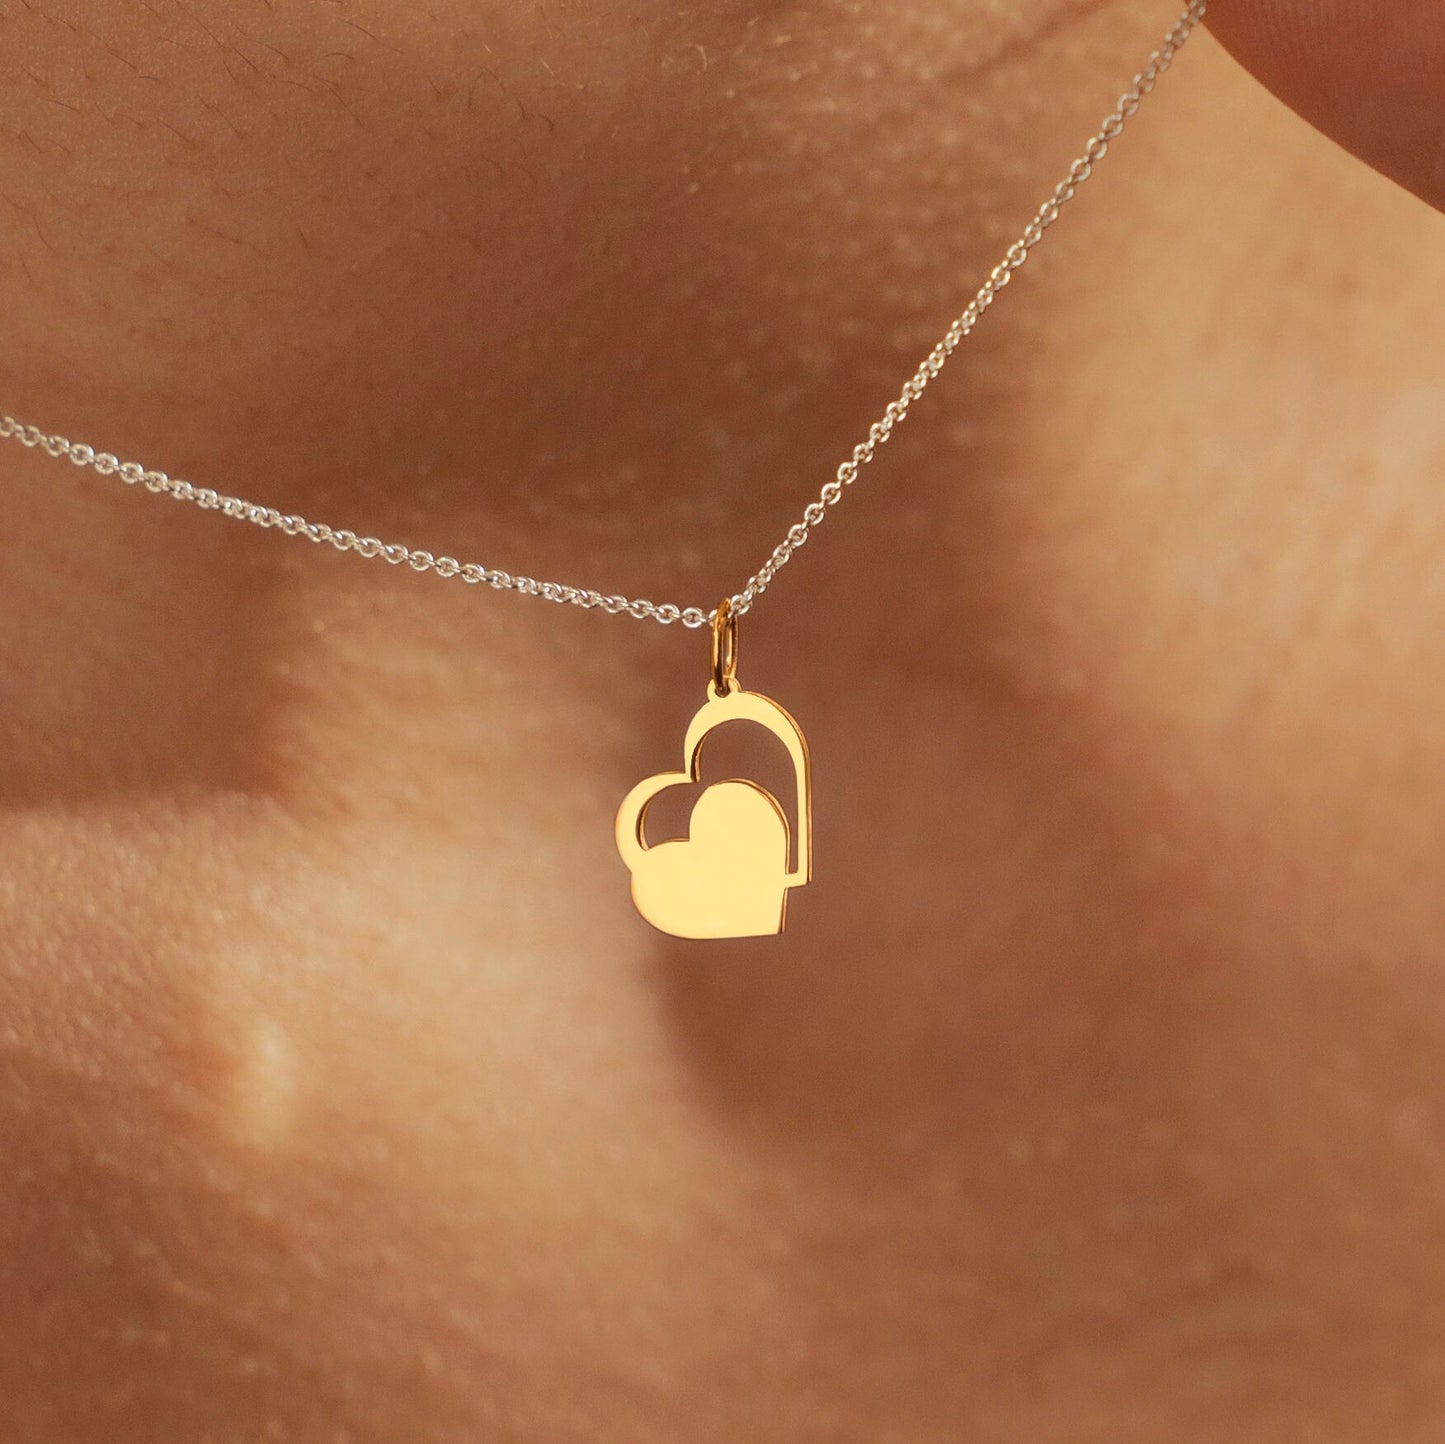 2 Mini Hearts Pendant Necklace